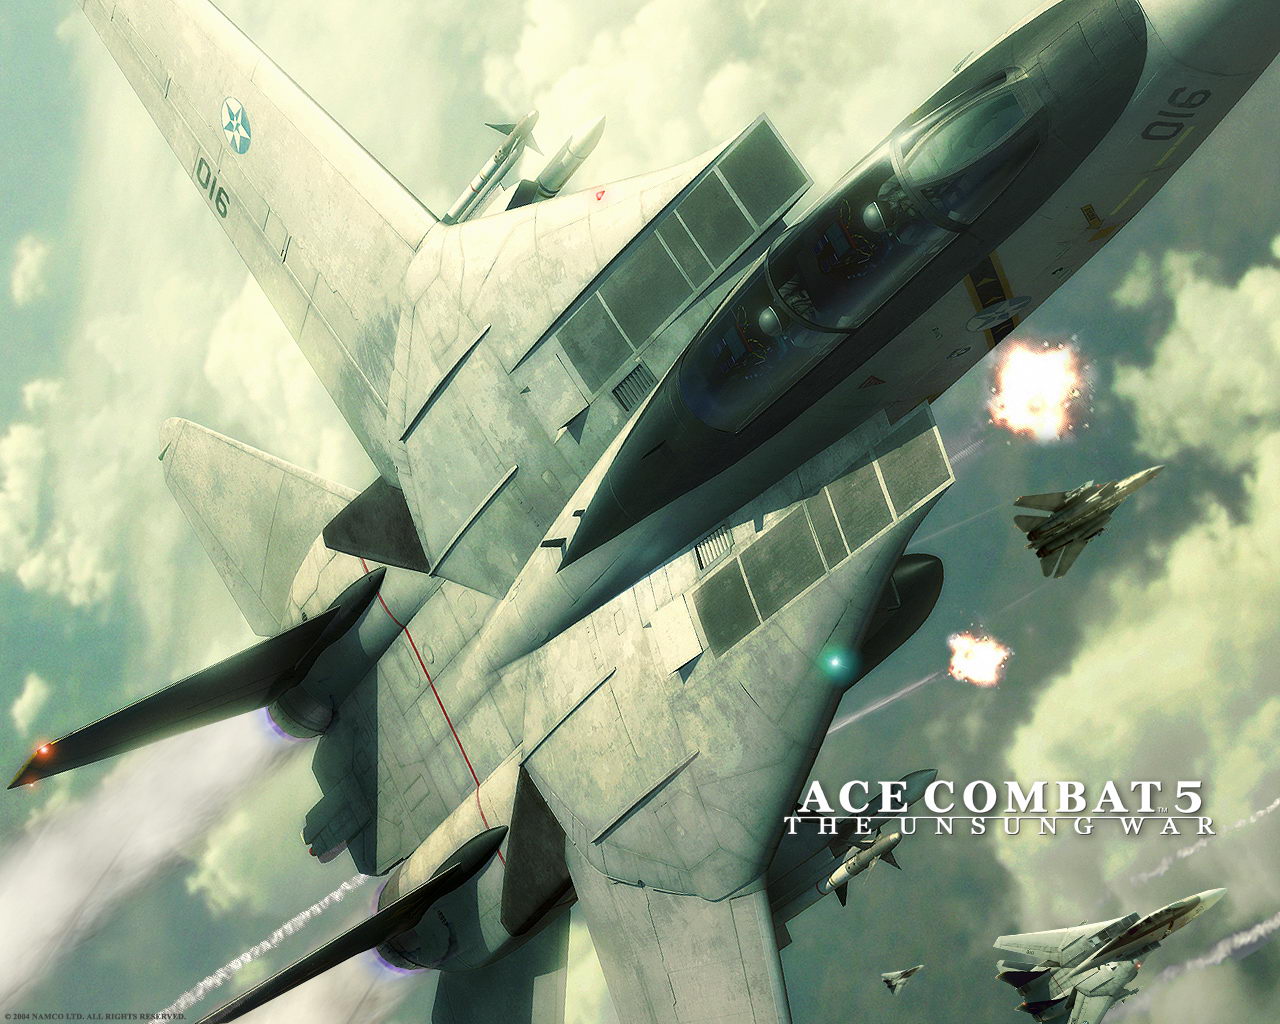 Fondos de Ace Combat Fondos de pantalla de Ace Combat   3D Fondos